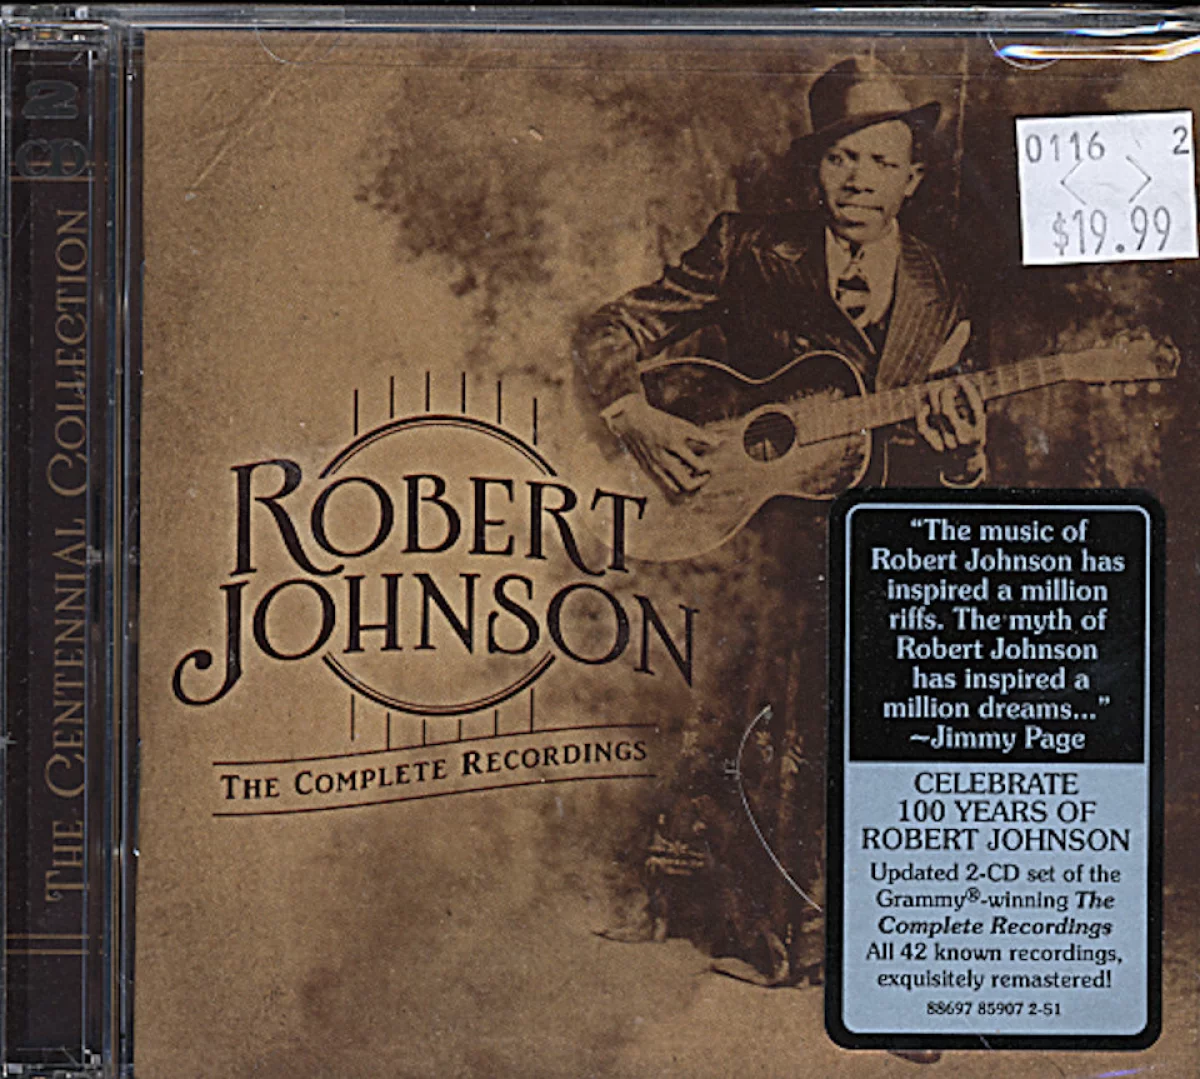 Robert Johnson CD, 2011 at Wolfgang's